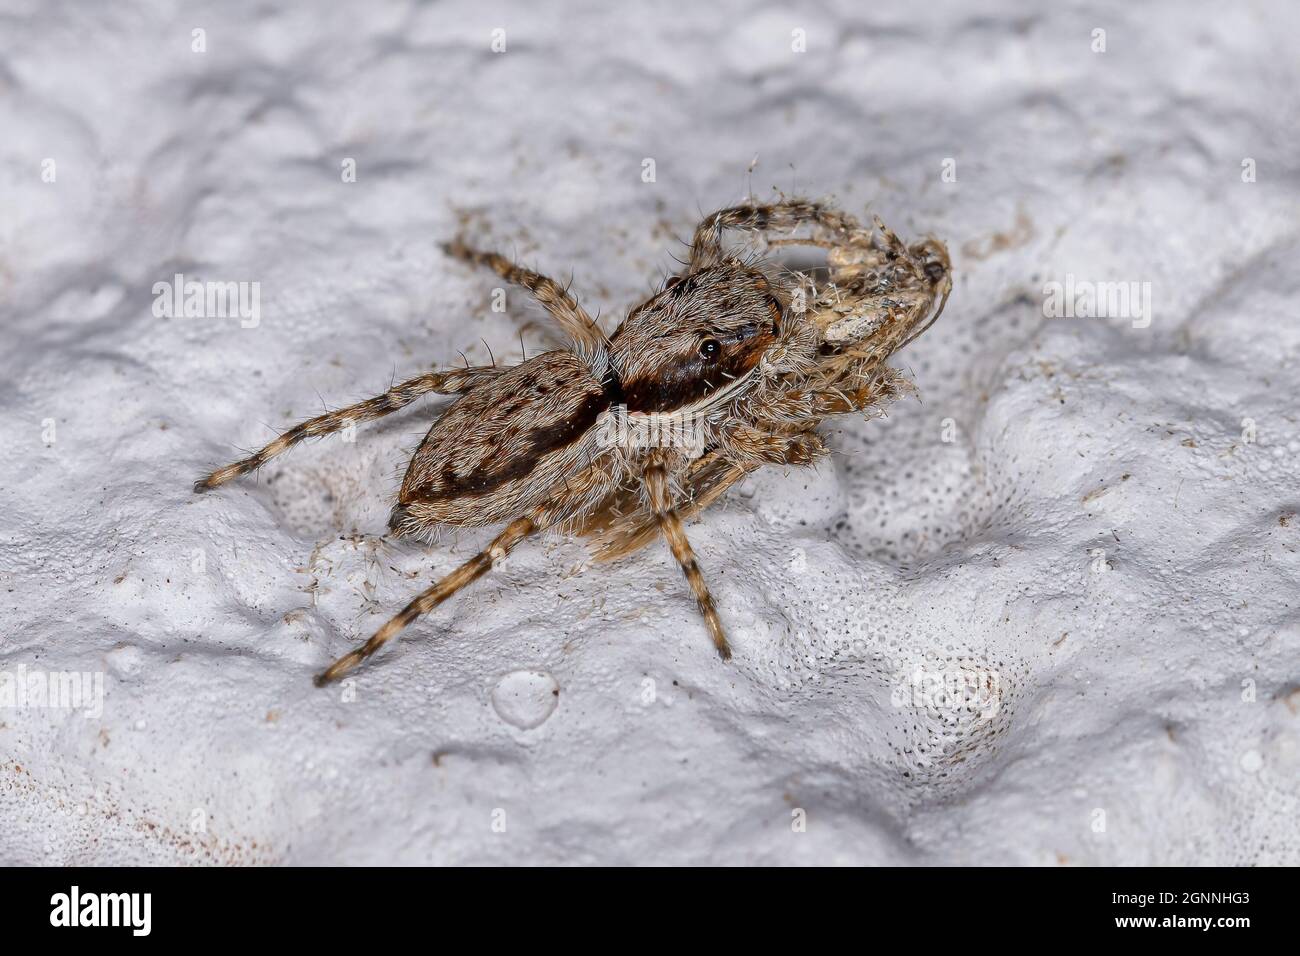 jumping spiders - Menemerus bivittatus and Plexippus paykulli